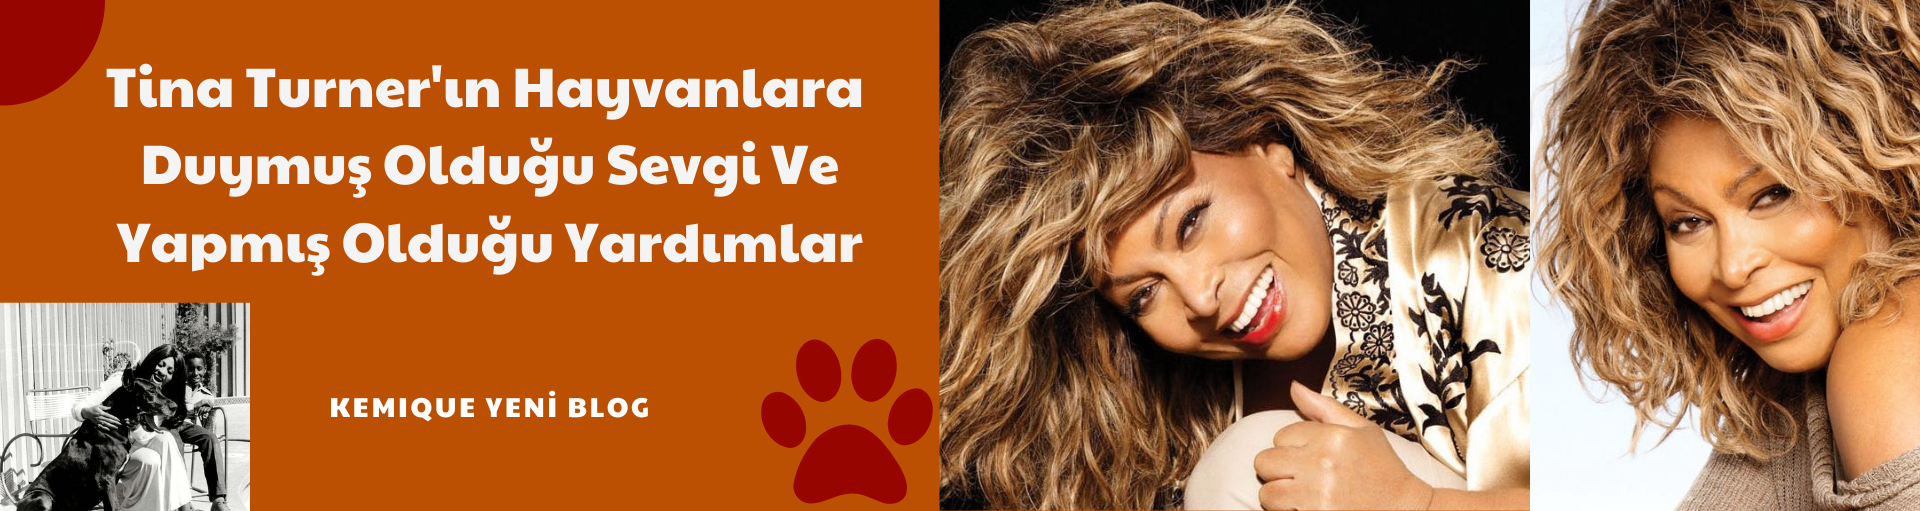 Tina Turner Hayvanlara Duyduğu Sevgi Ve Yapmış Olduğu Destekler